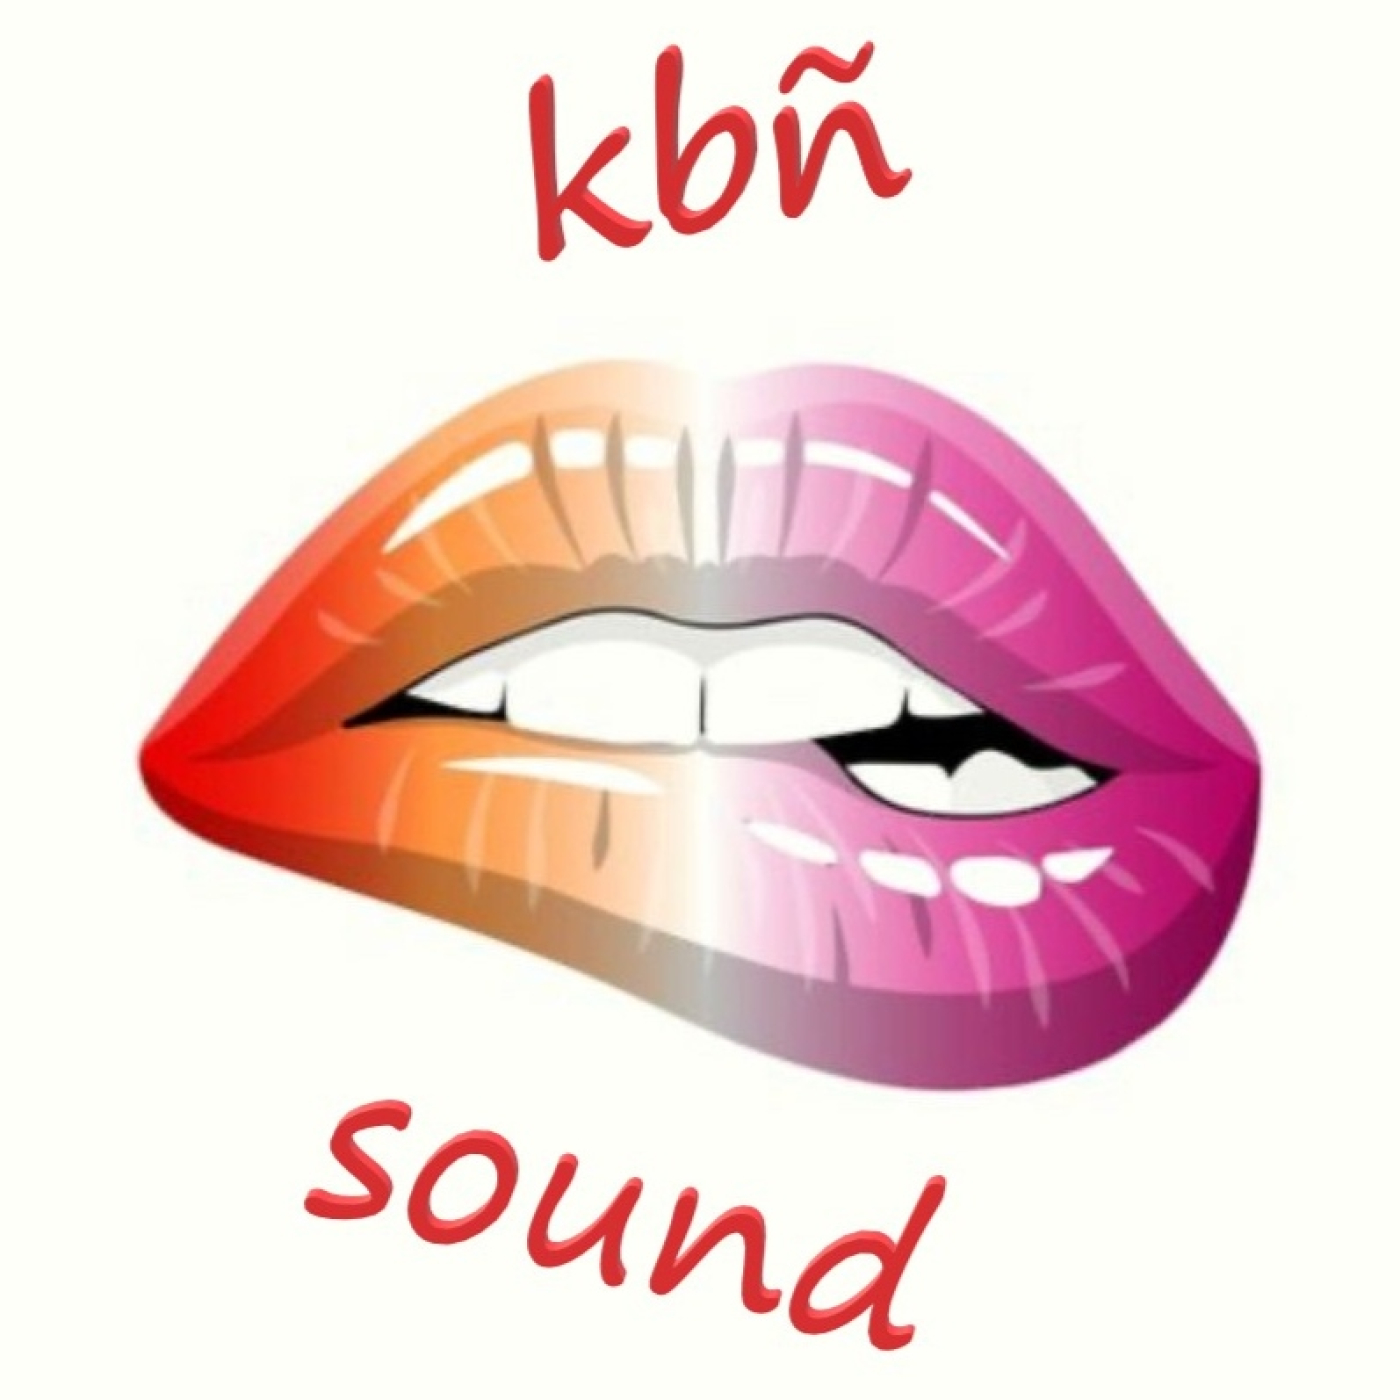 kbñ sound 2 Dj Broc